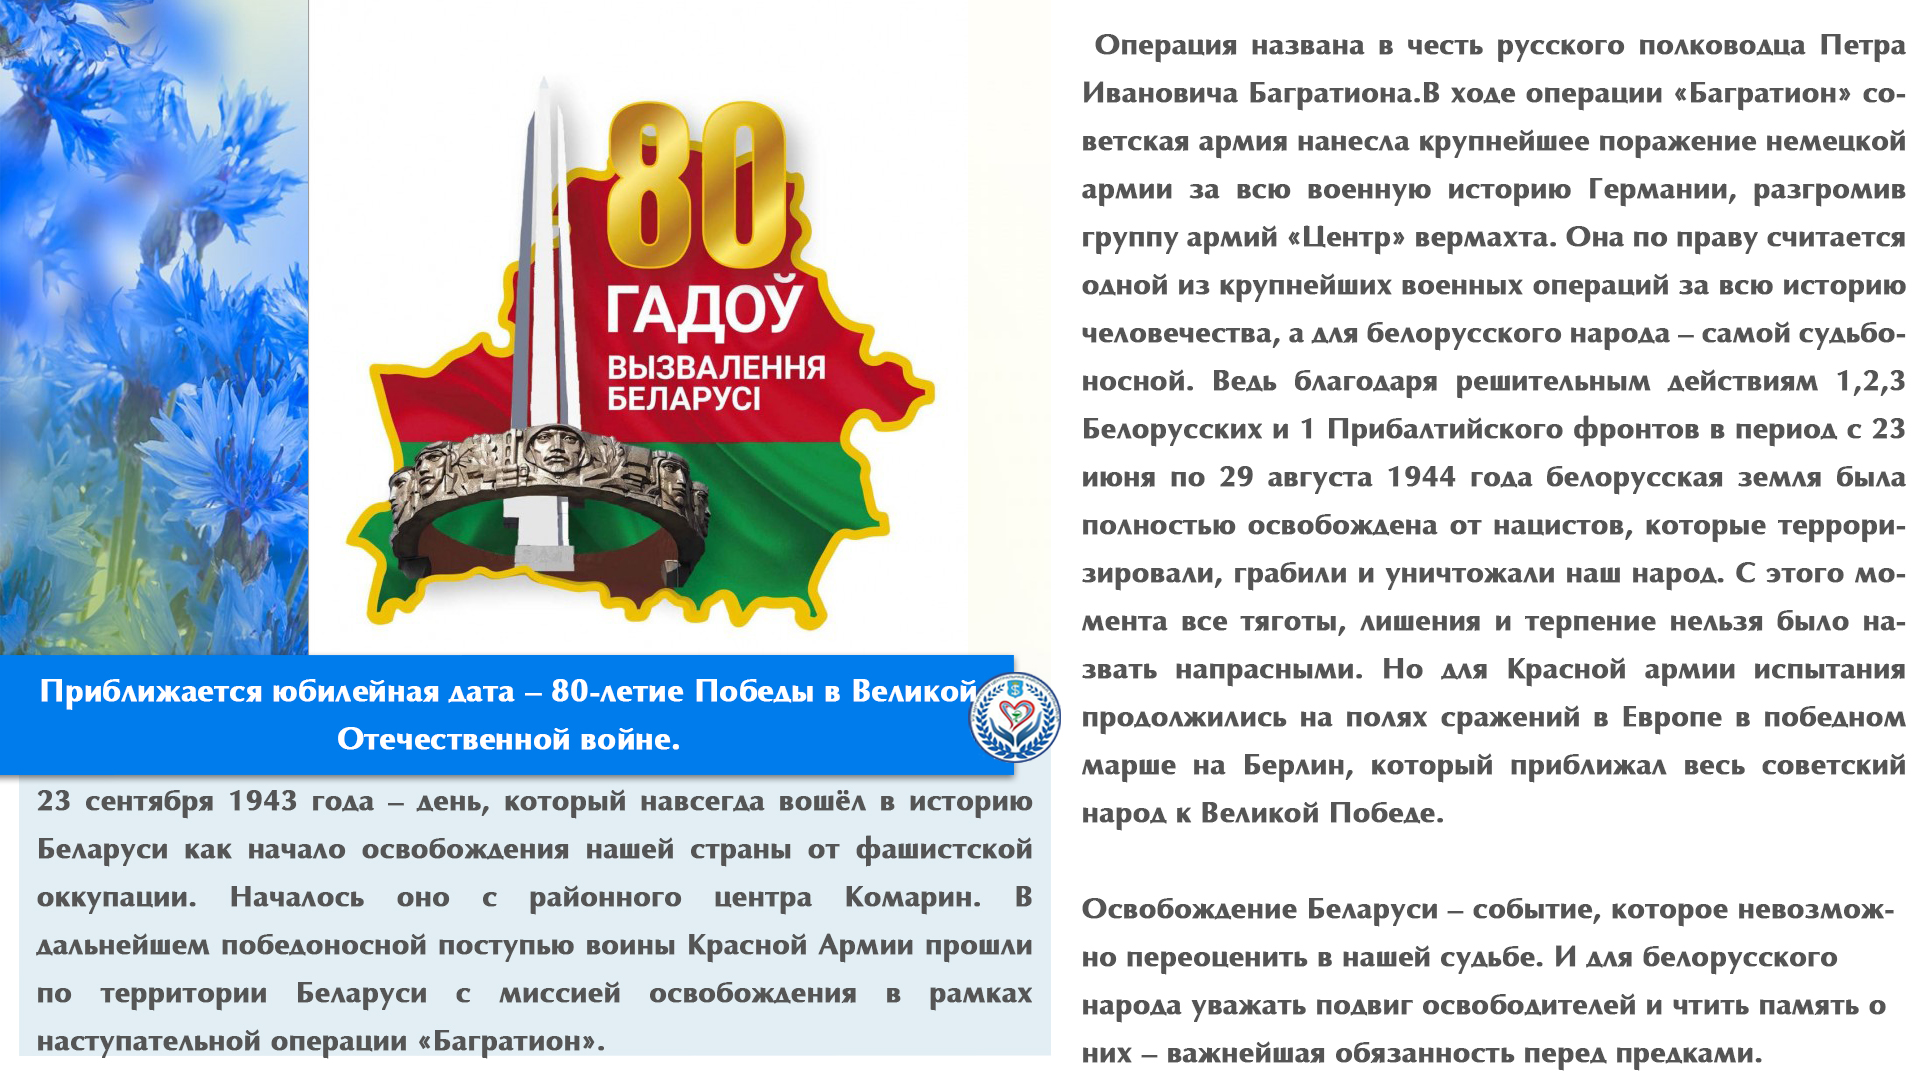 Приближается юбилейная дата – 80-летие Победы в Великой Отечественной войне.